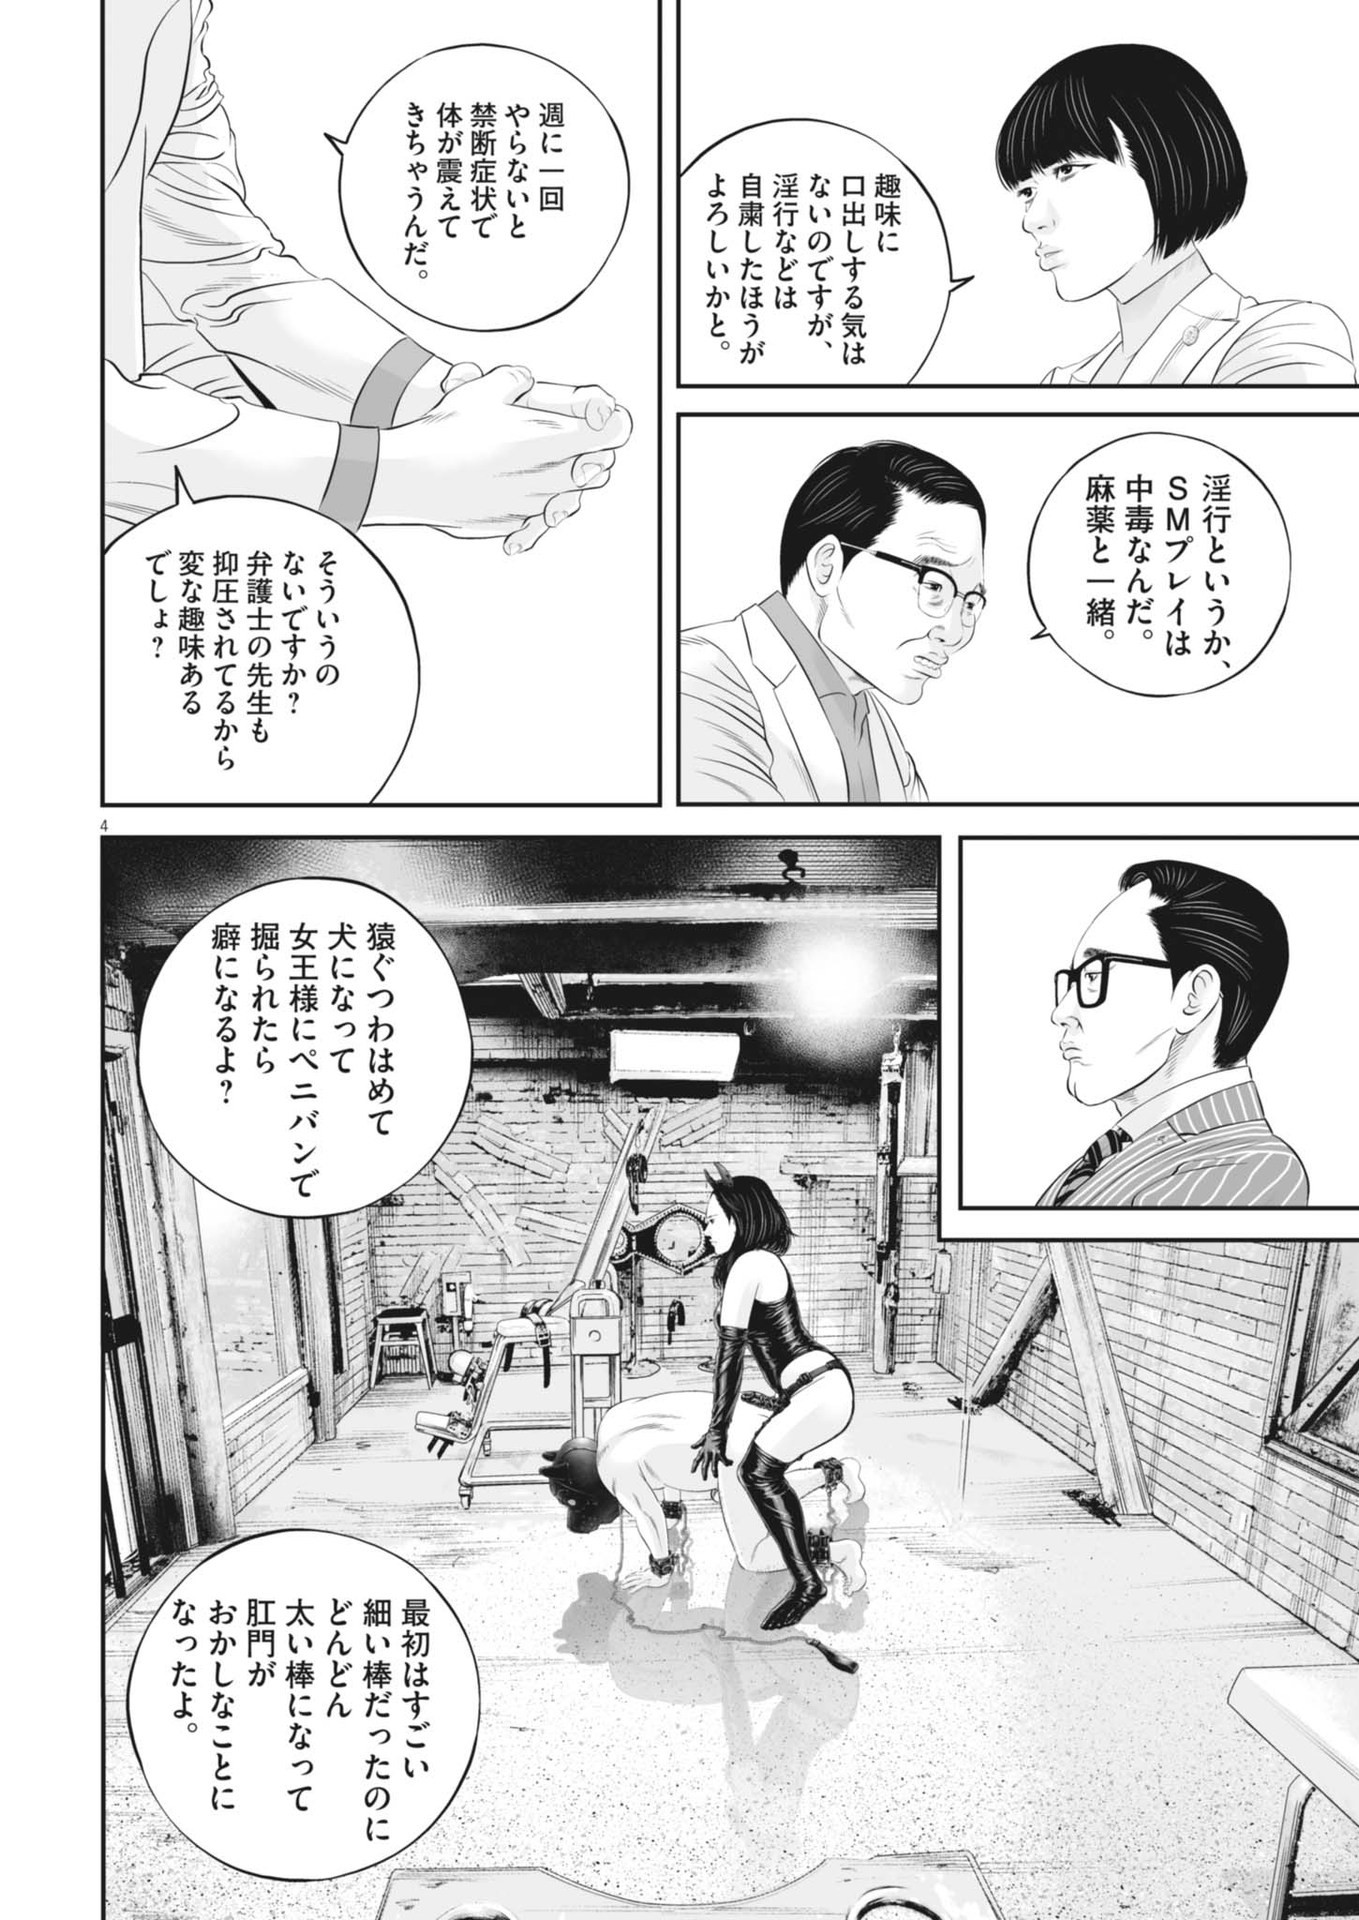 Kujou no Taizai - Chapter 99 - Page 4